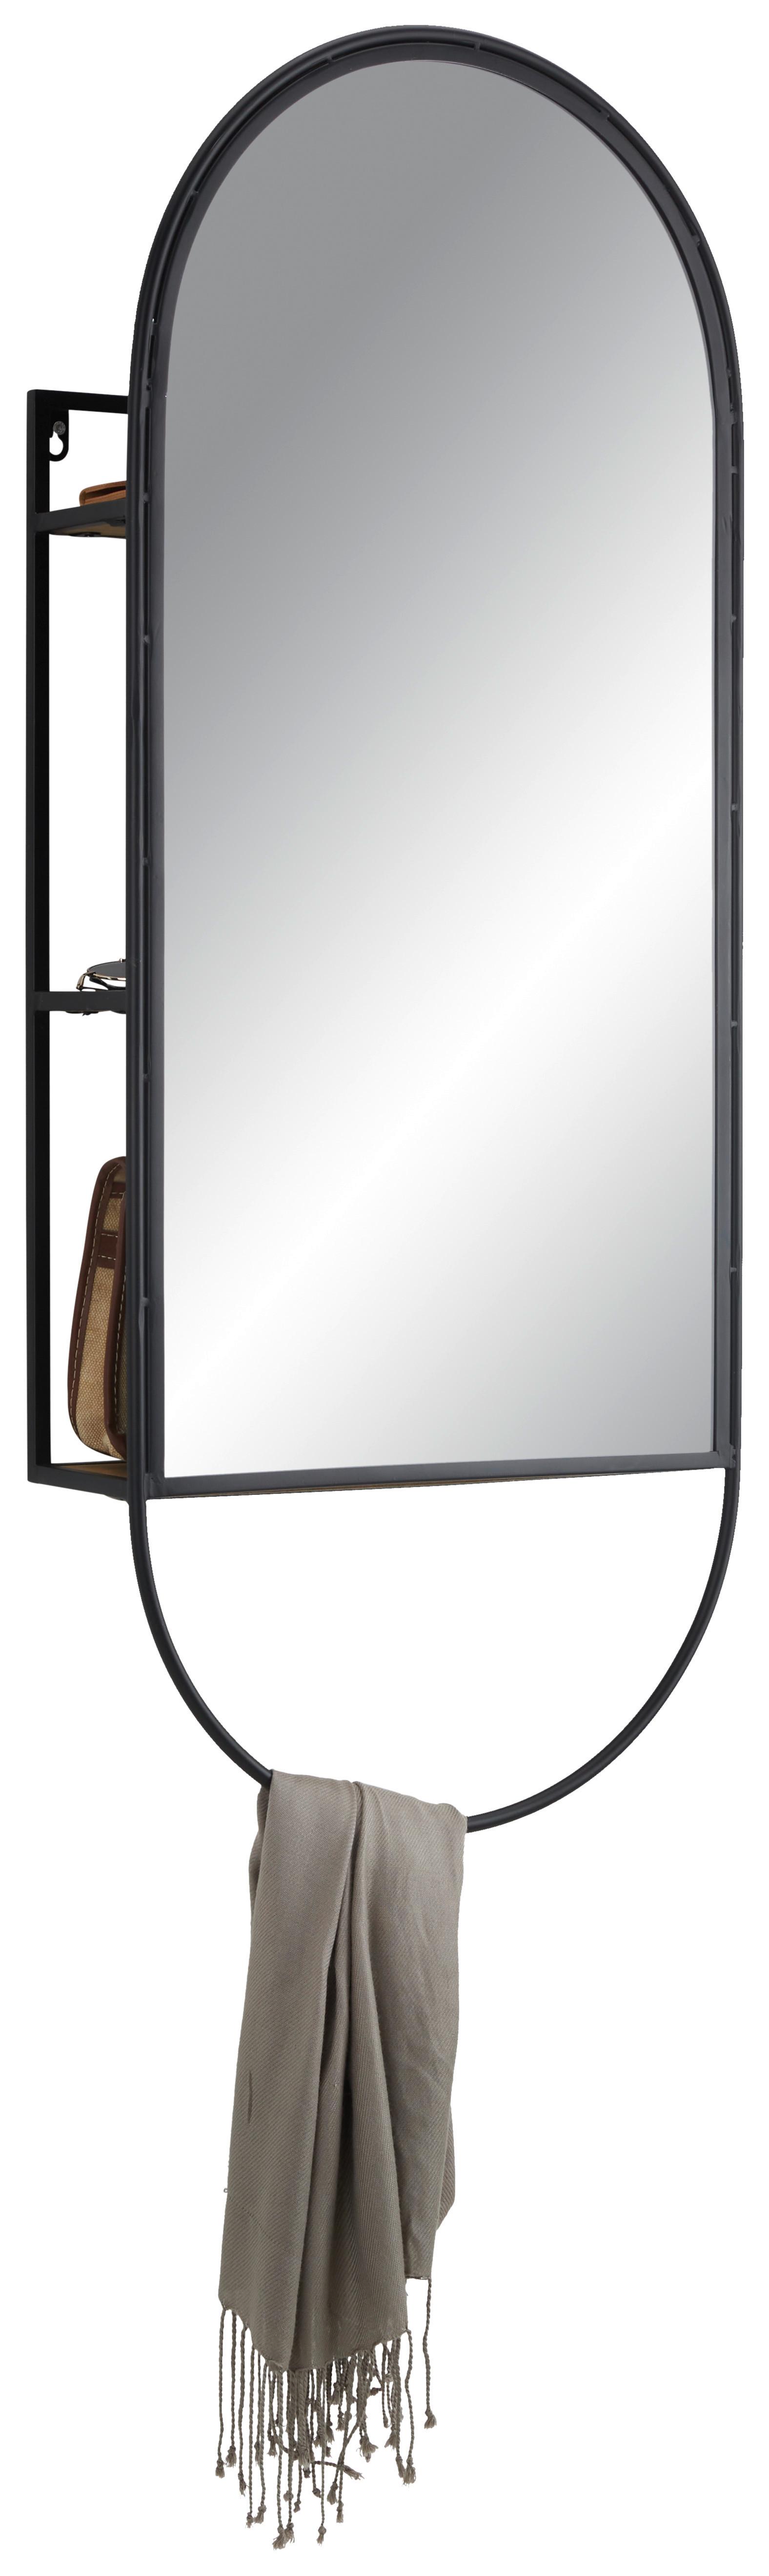 Ogledalo Mira -Trend- - črna, Trendi, kovina/steklo (40/100/12cm) - Premium Living